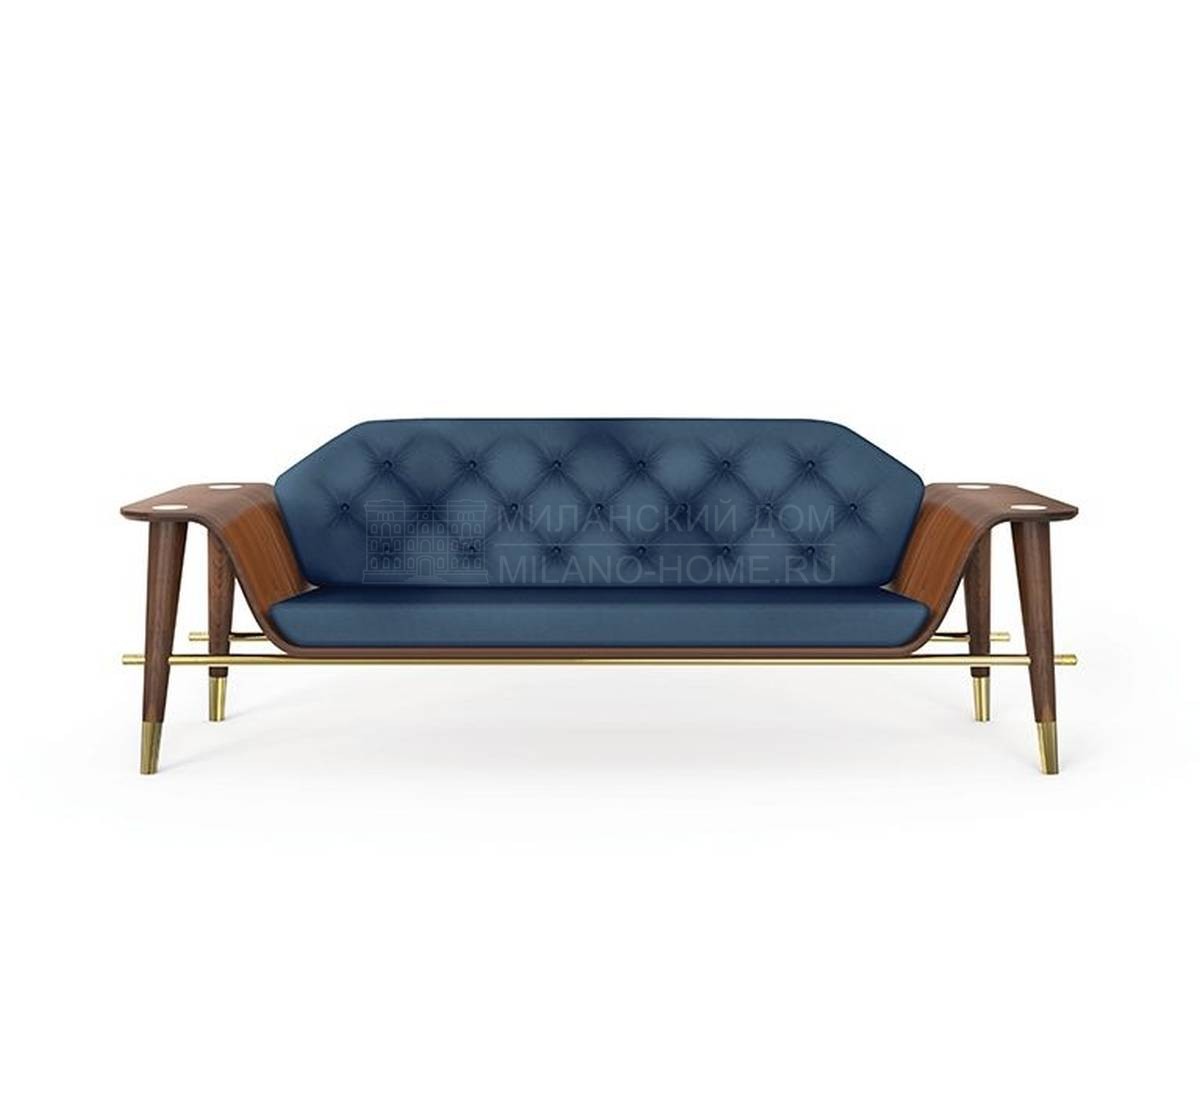 Прямой диван Curtis/sofa из Португалии фабрики DELIGHTFULL